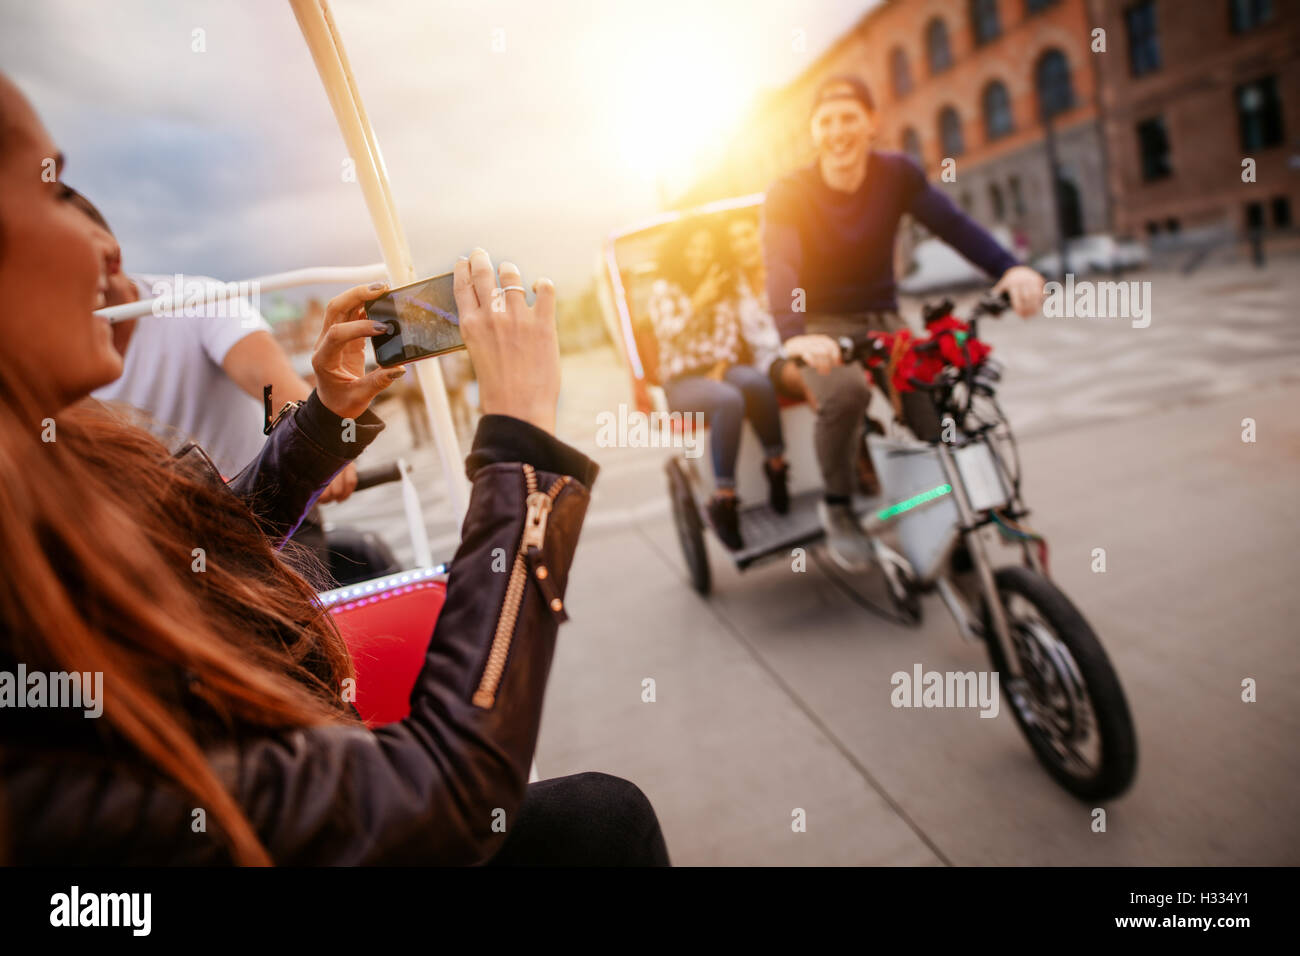 Frau fotografieren Freunde auf Dreirad fahren. Jugendliche, die Spaß im Urlaub. Stockfoto